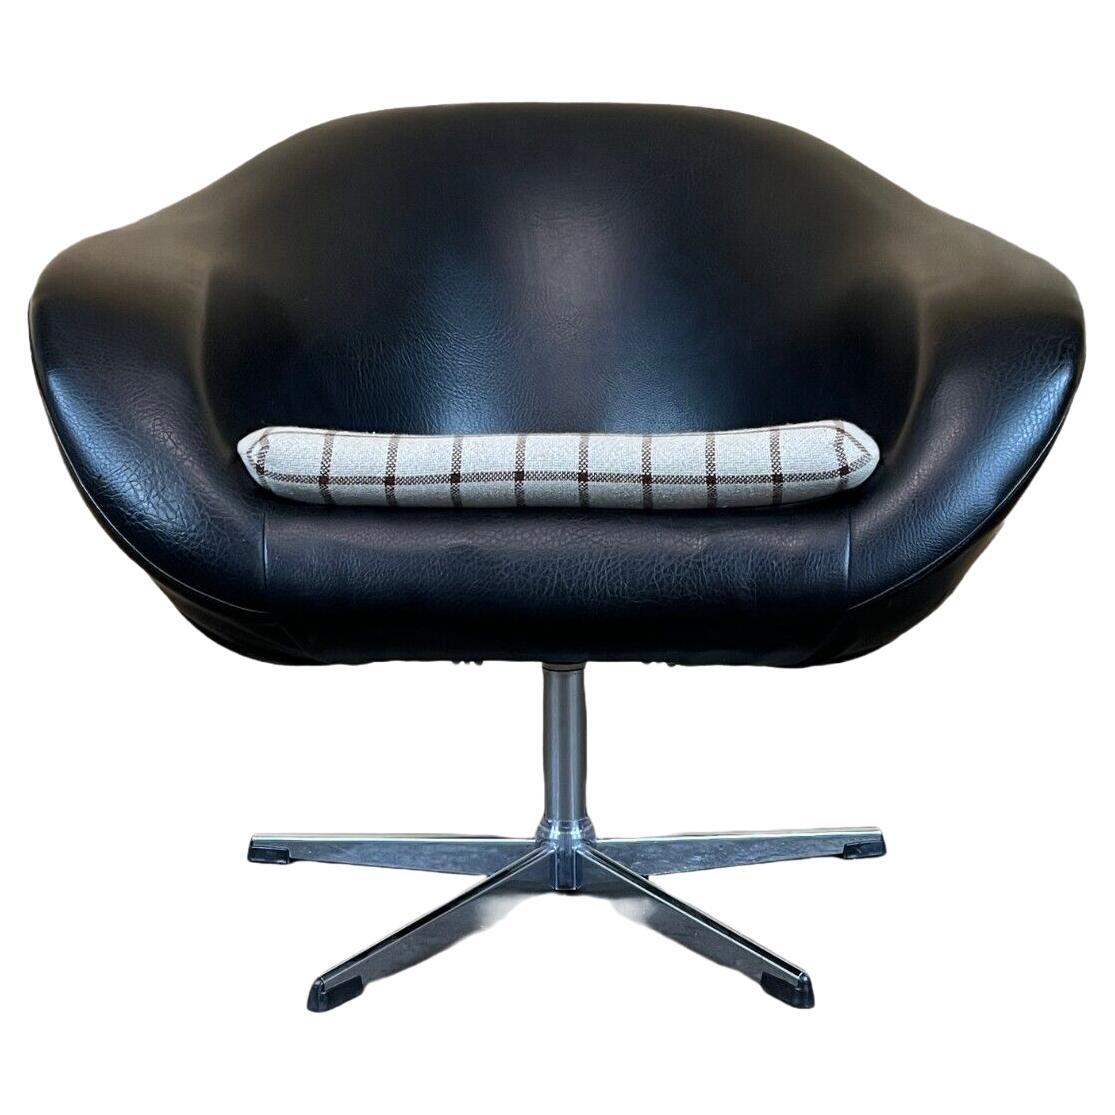 Fauteuil Balloon Chair, fauteuil de cocktail design mi-siècle moderne, années 60/70